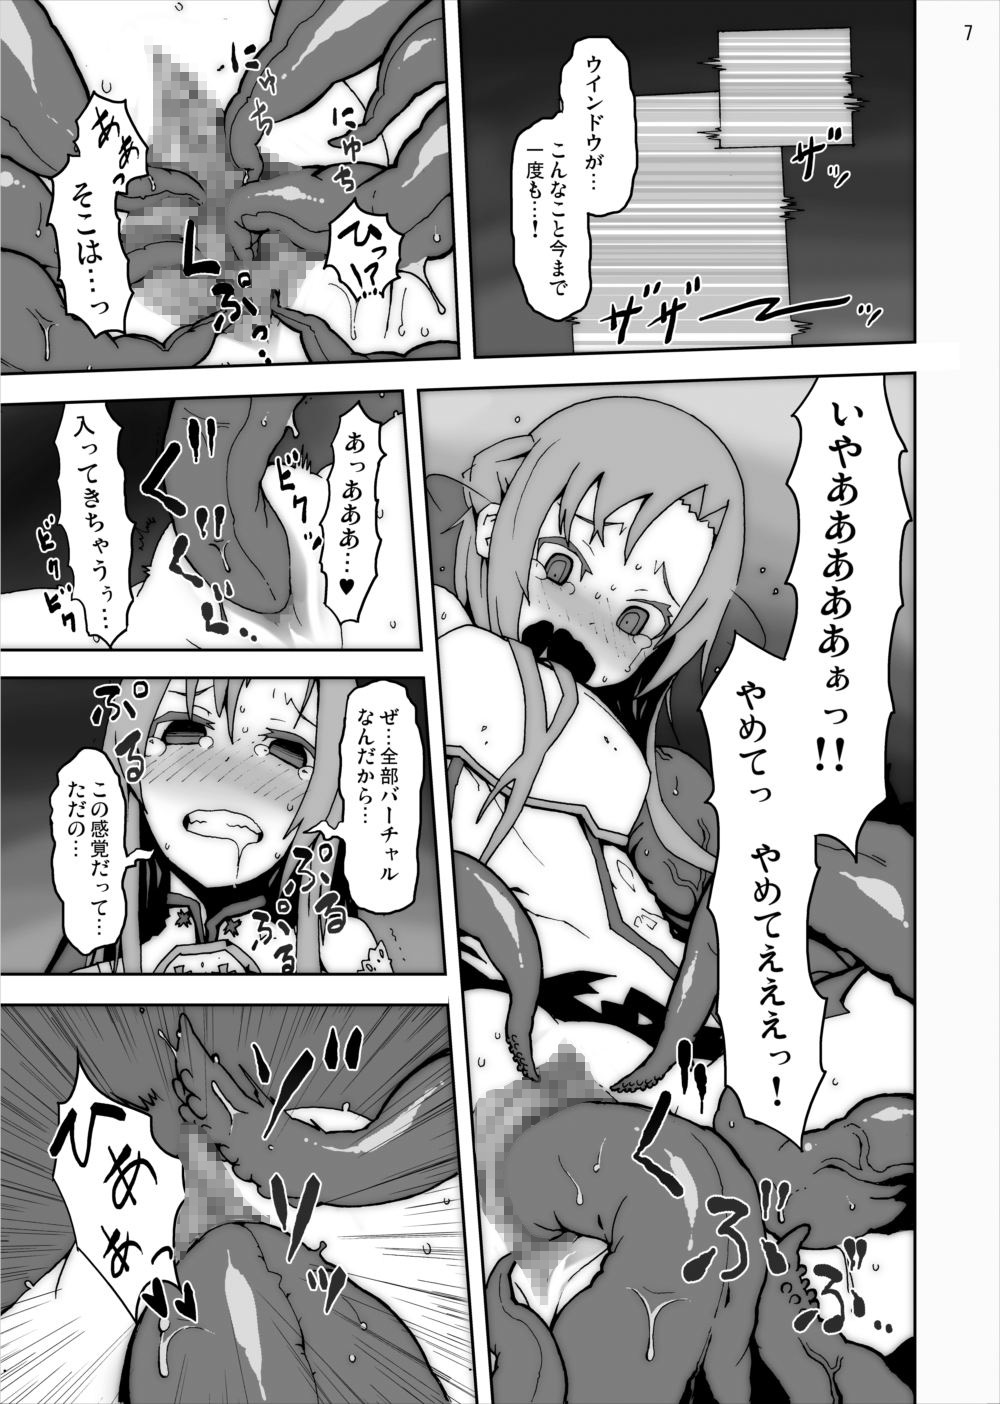 [Studio Nunchaku] Asuna in Tentacle Party Rape Online (Sword Art Online) page 6 full